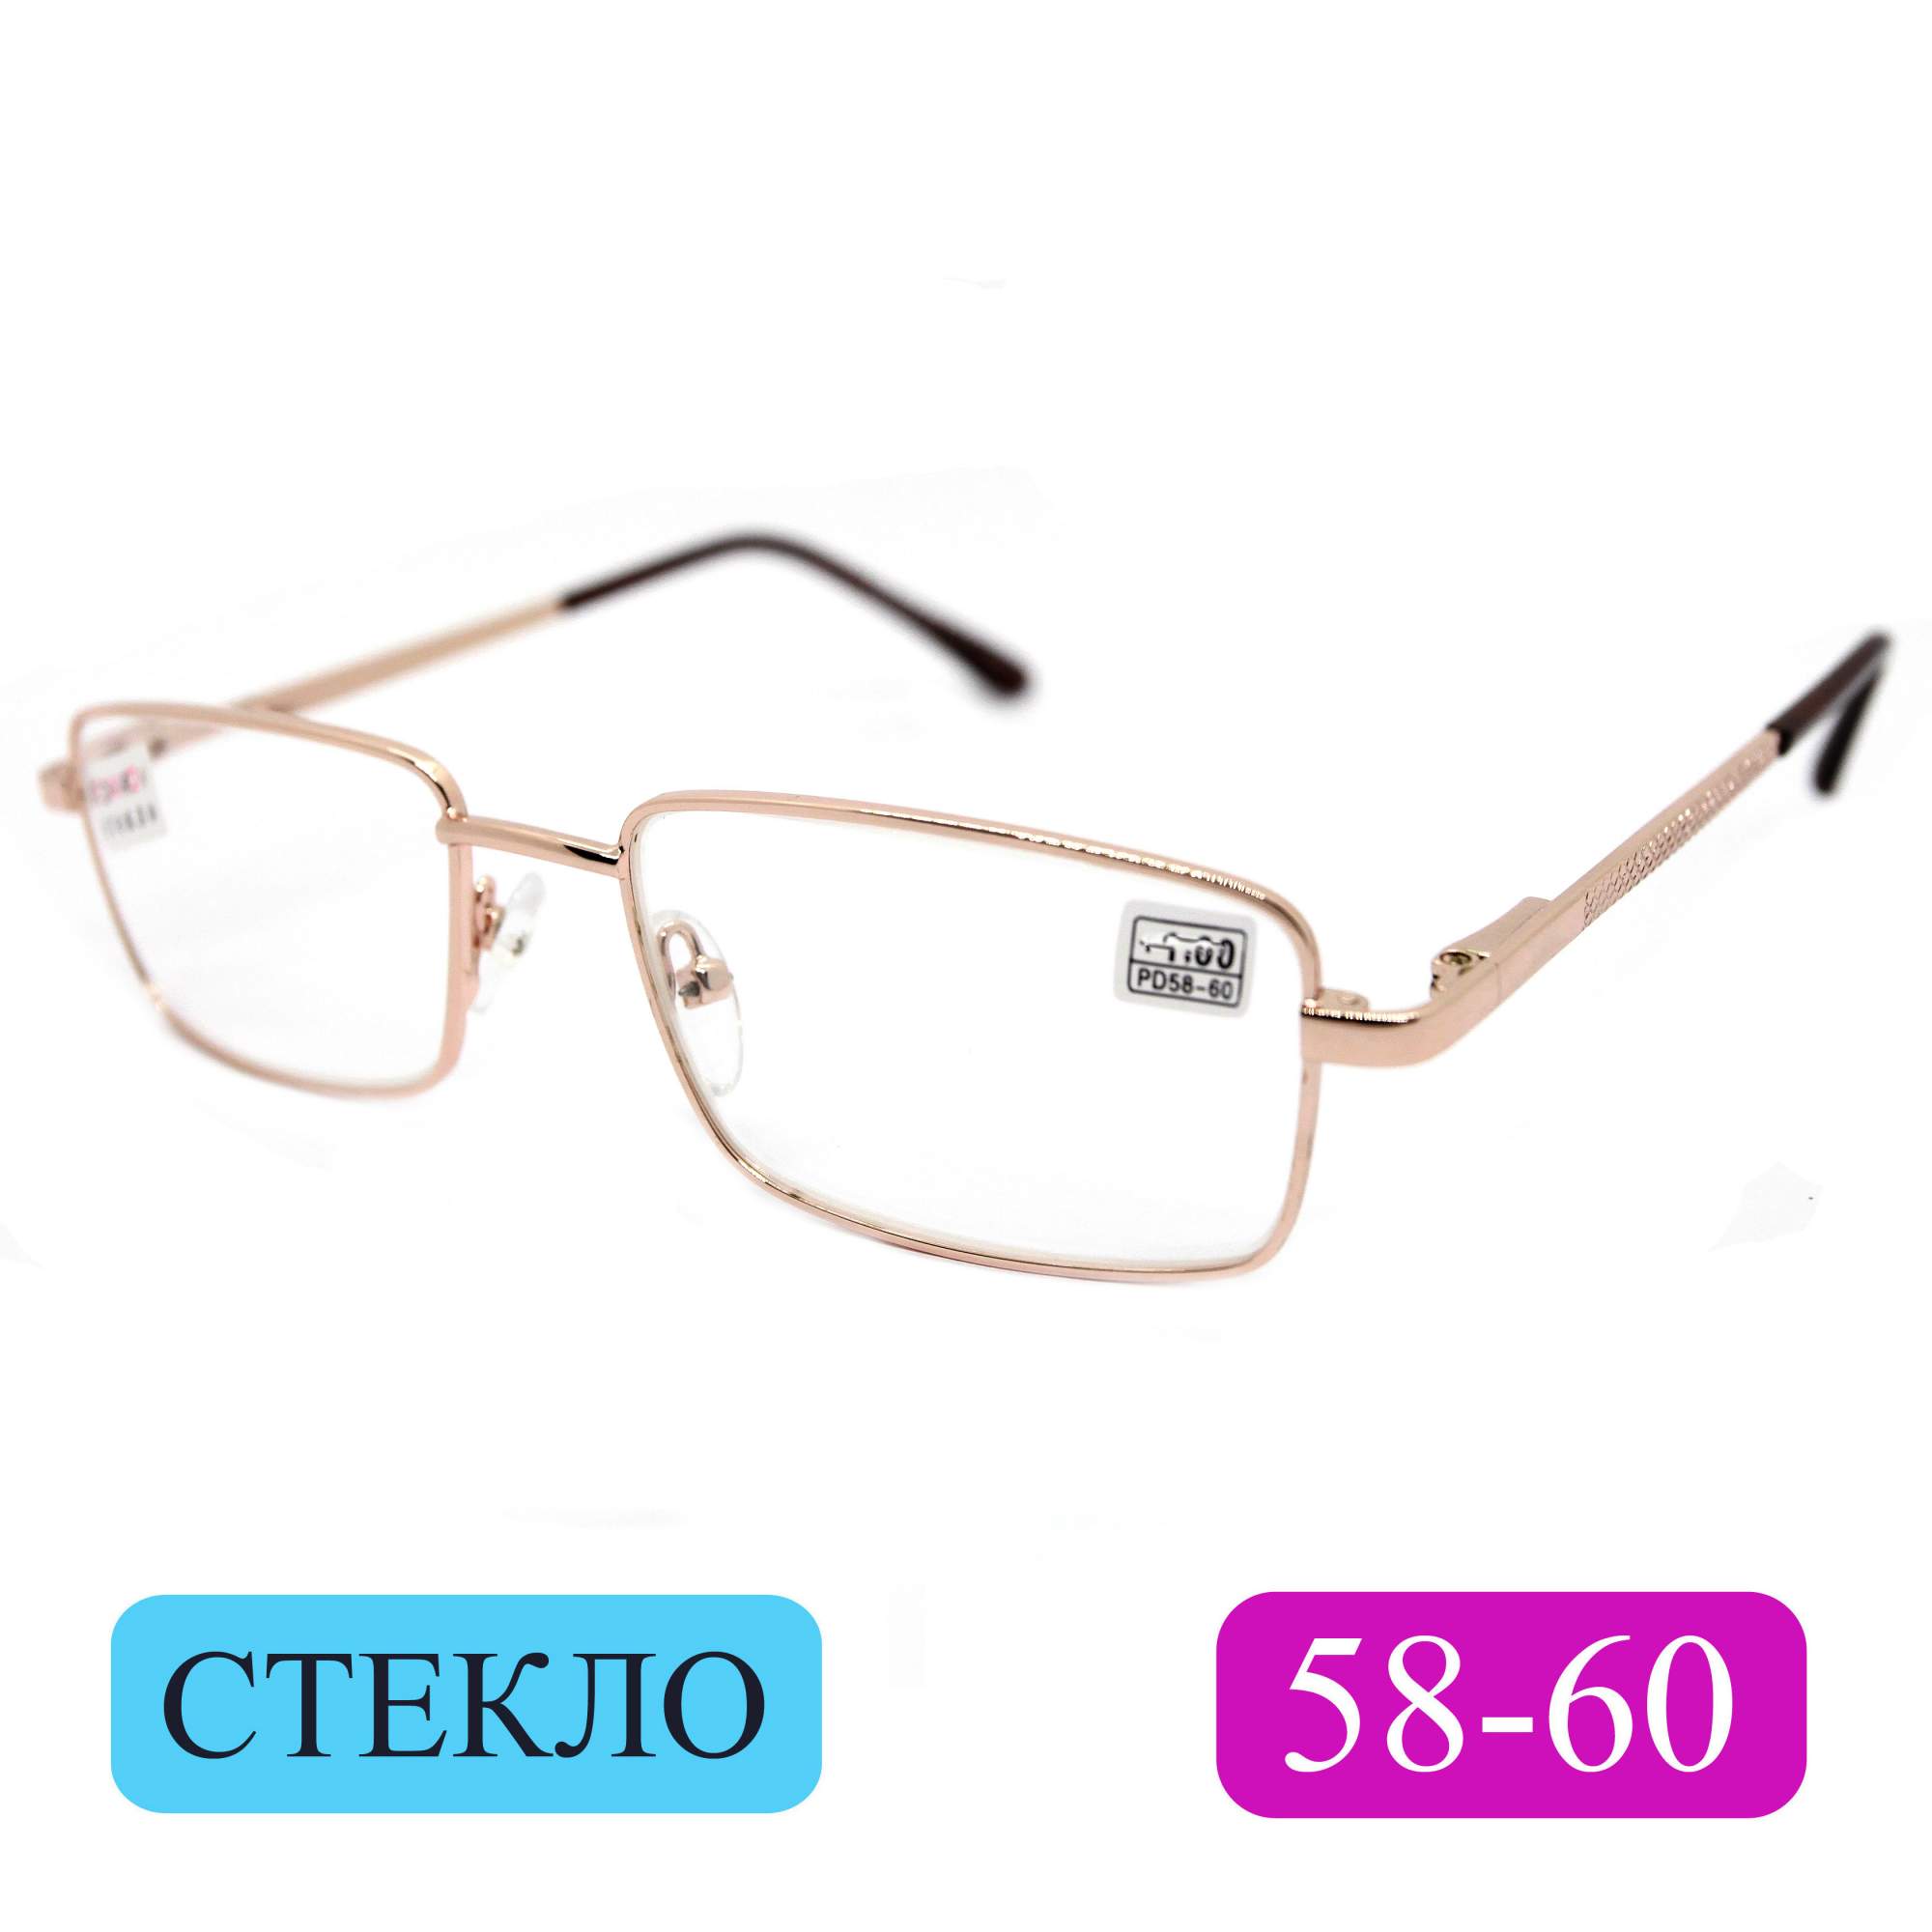 Готовые очки Fedrov 569, со стеклянной линзой, +1,25, без футляра, золотые, РЦ 58-60